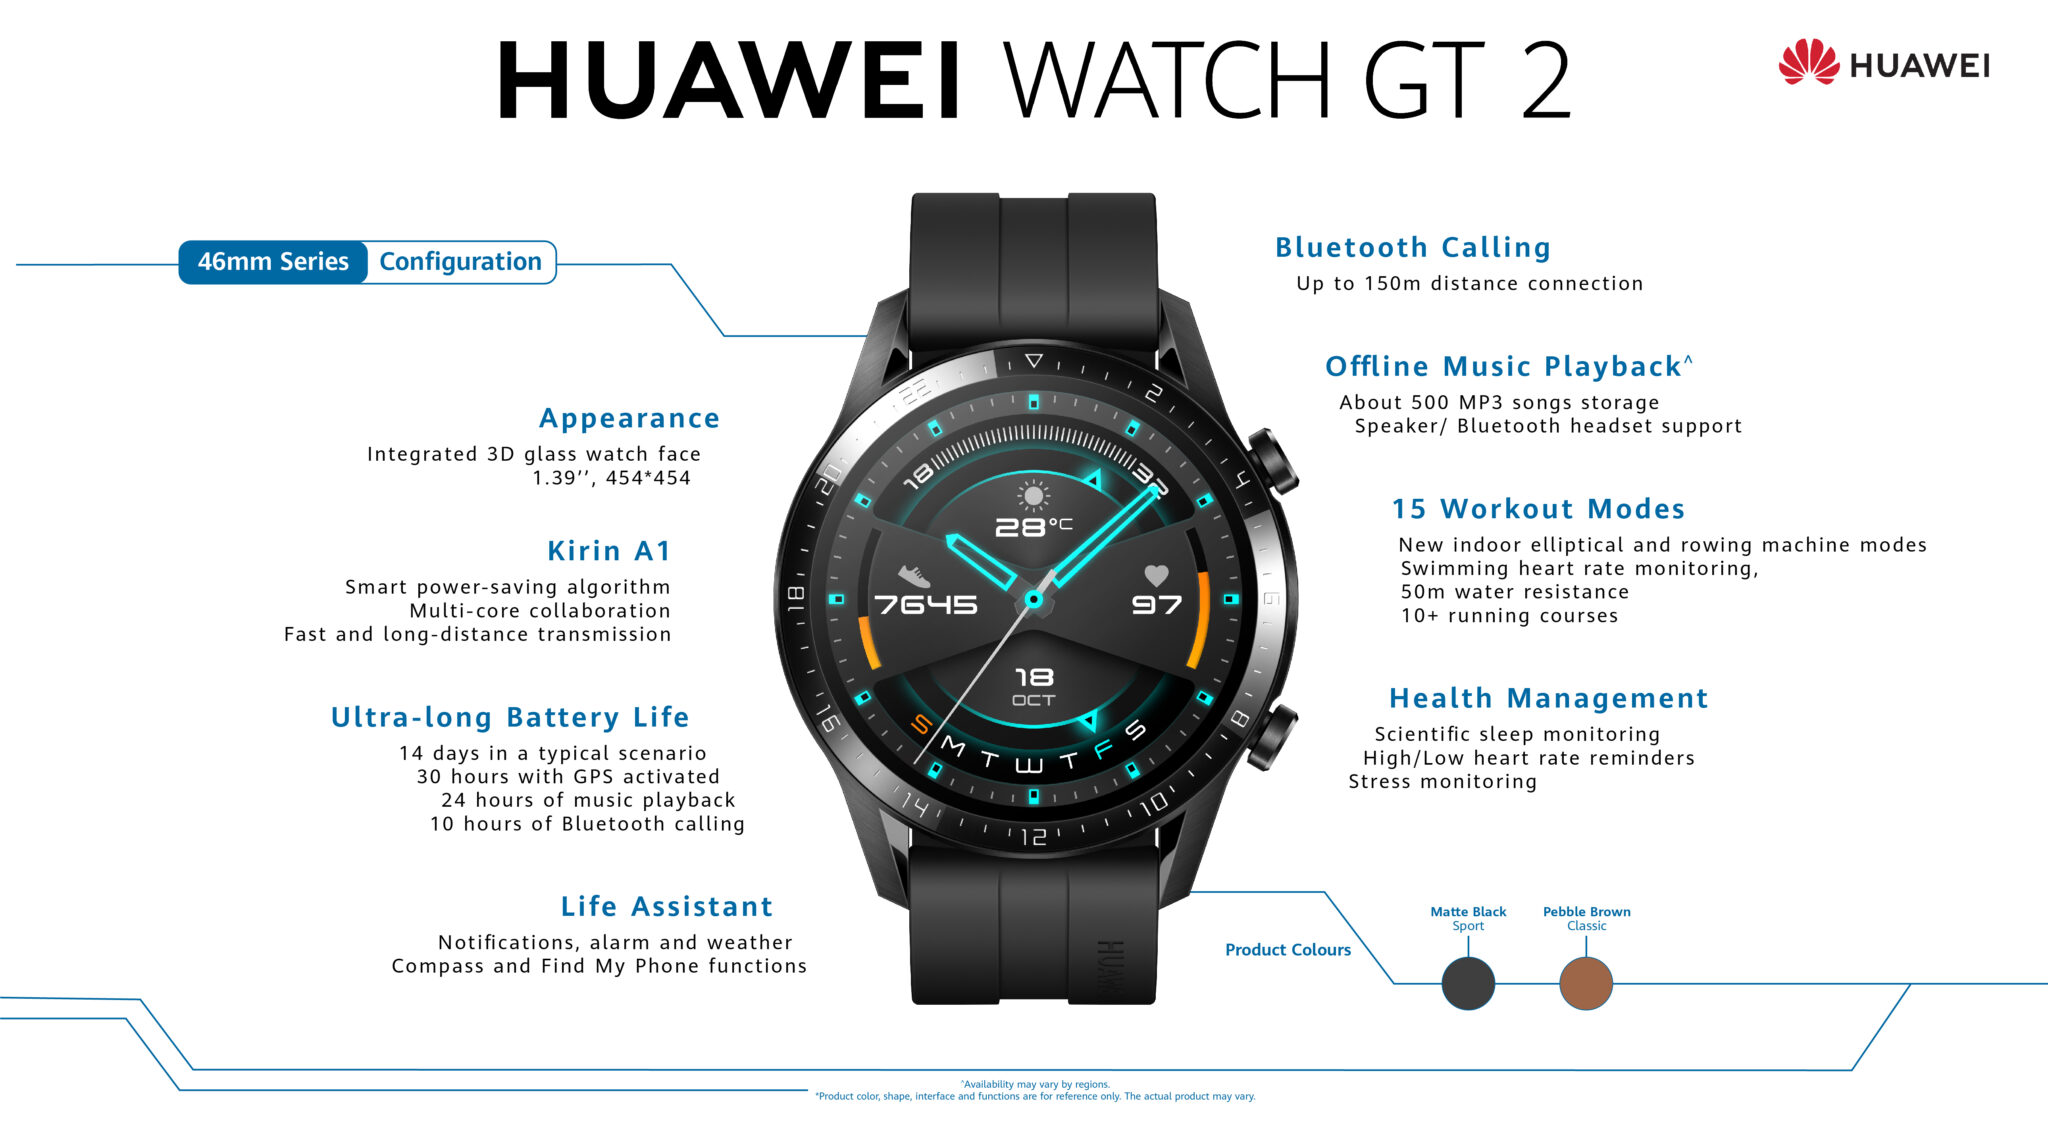 Huwaei Watch GT 2 schematic